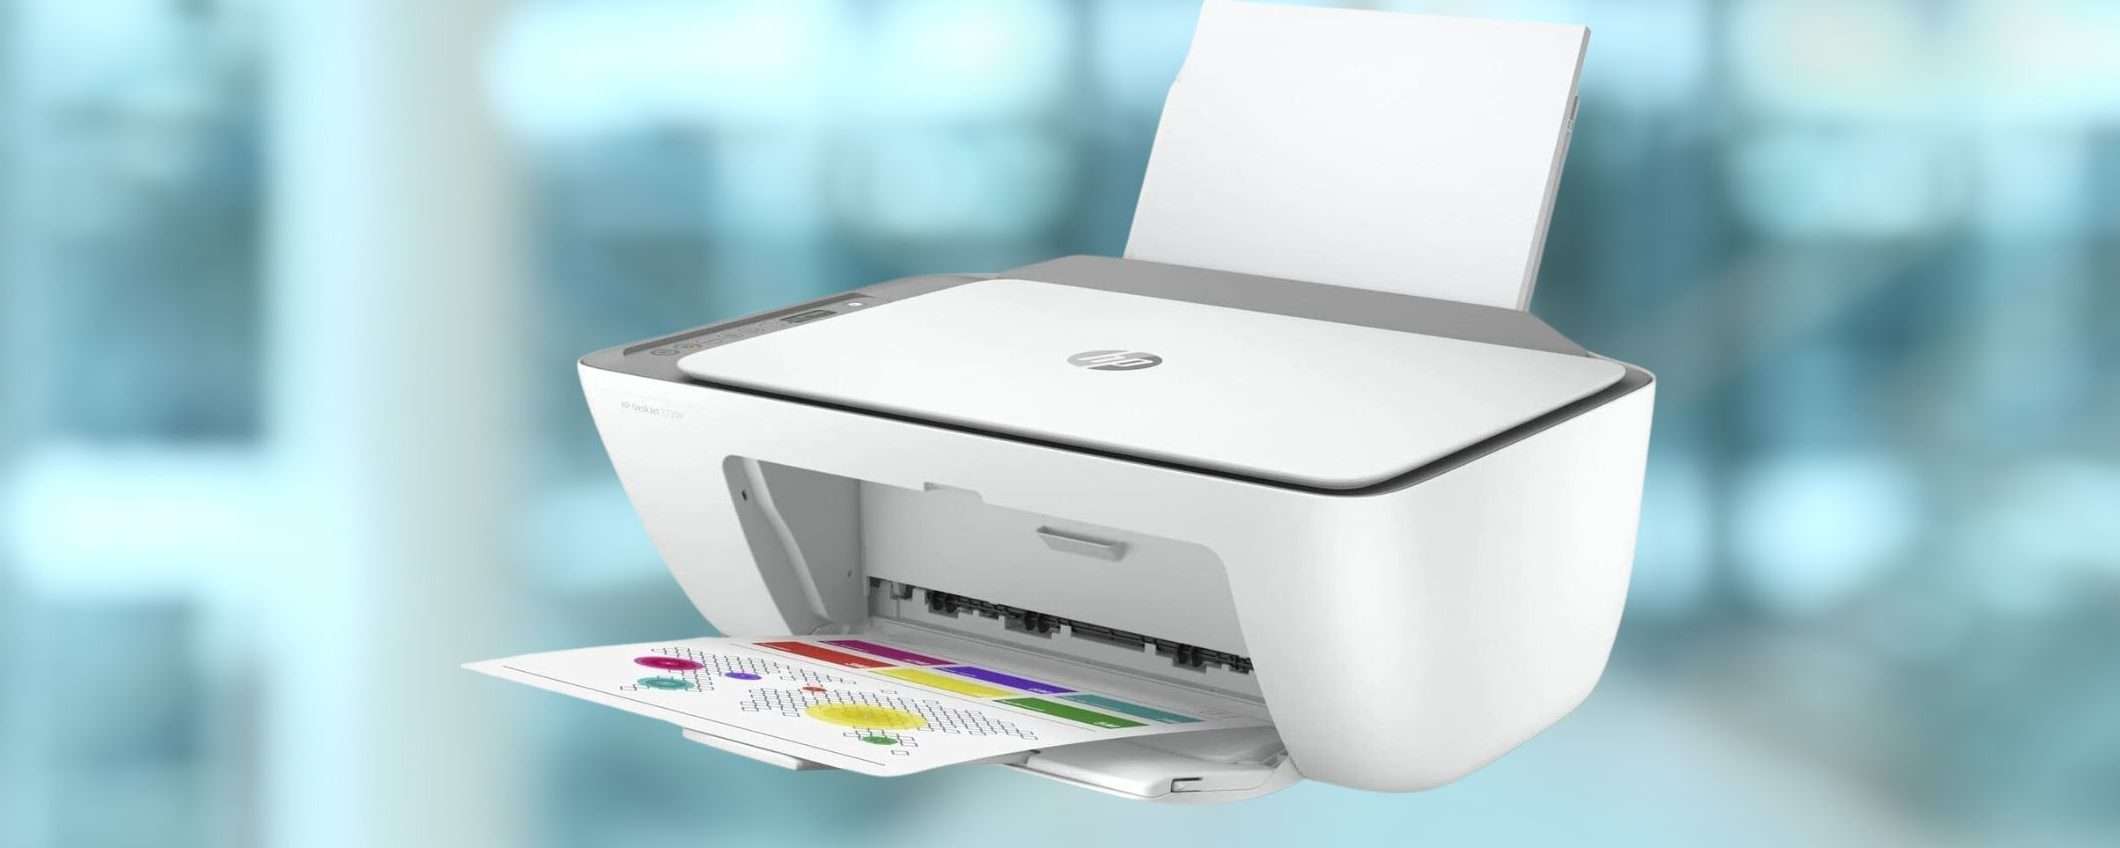 Il prezzo di questa stampante multifunzione HP è CROLLATO a 49€